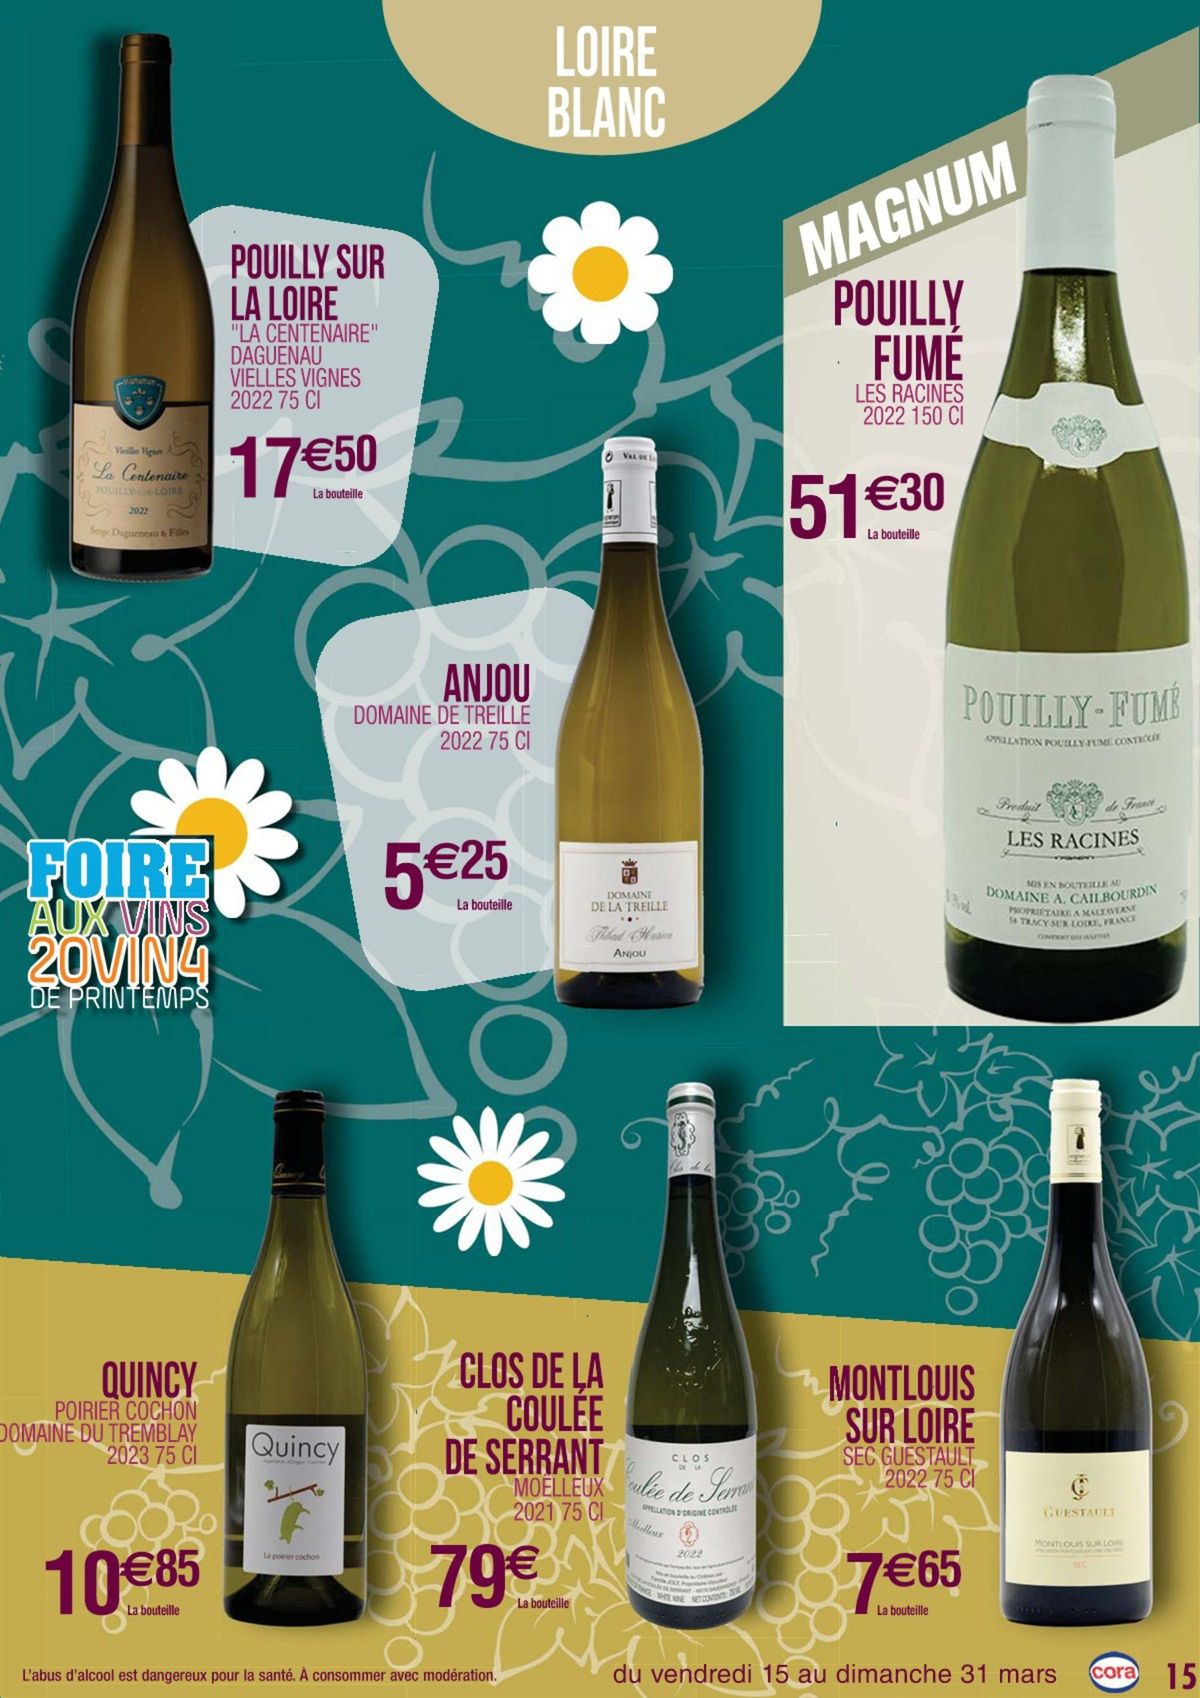 Catalogue Foire aux vins 20VIN4, page 00006